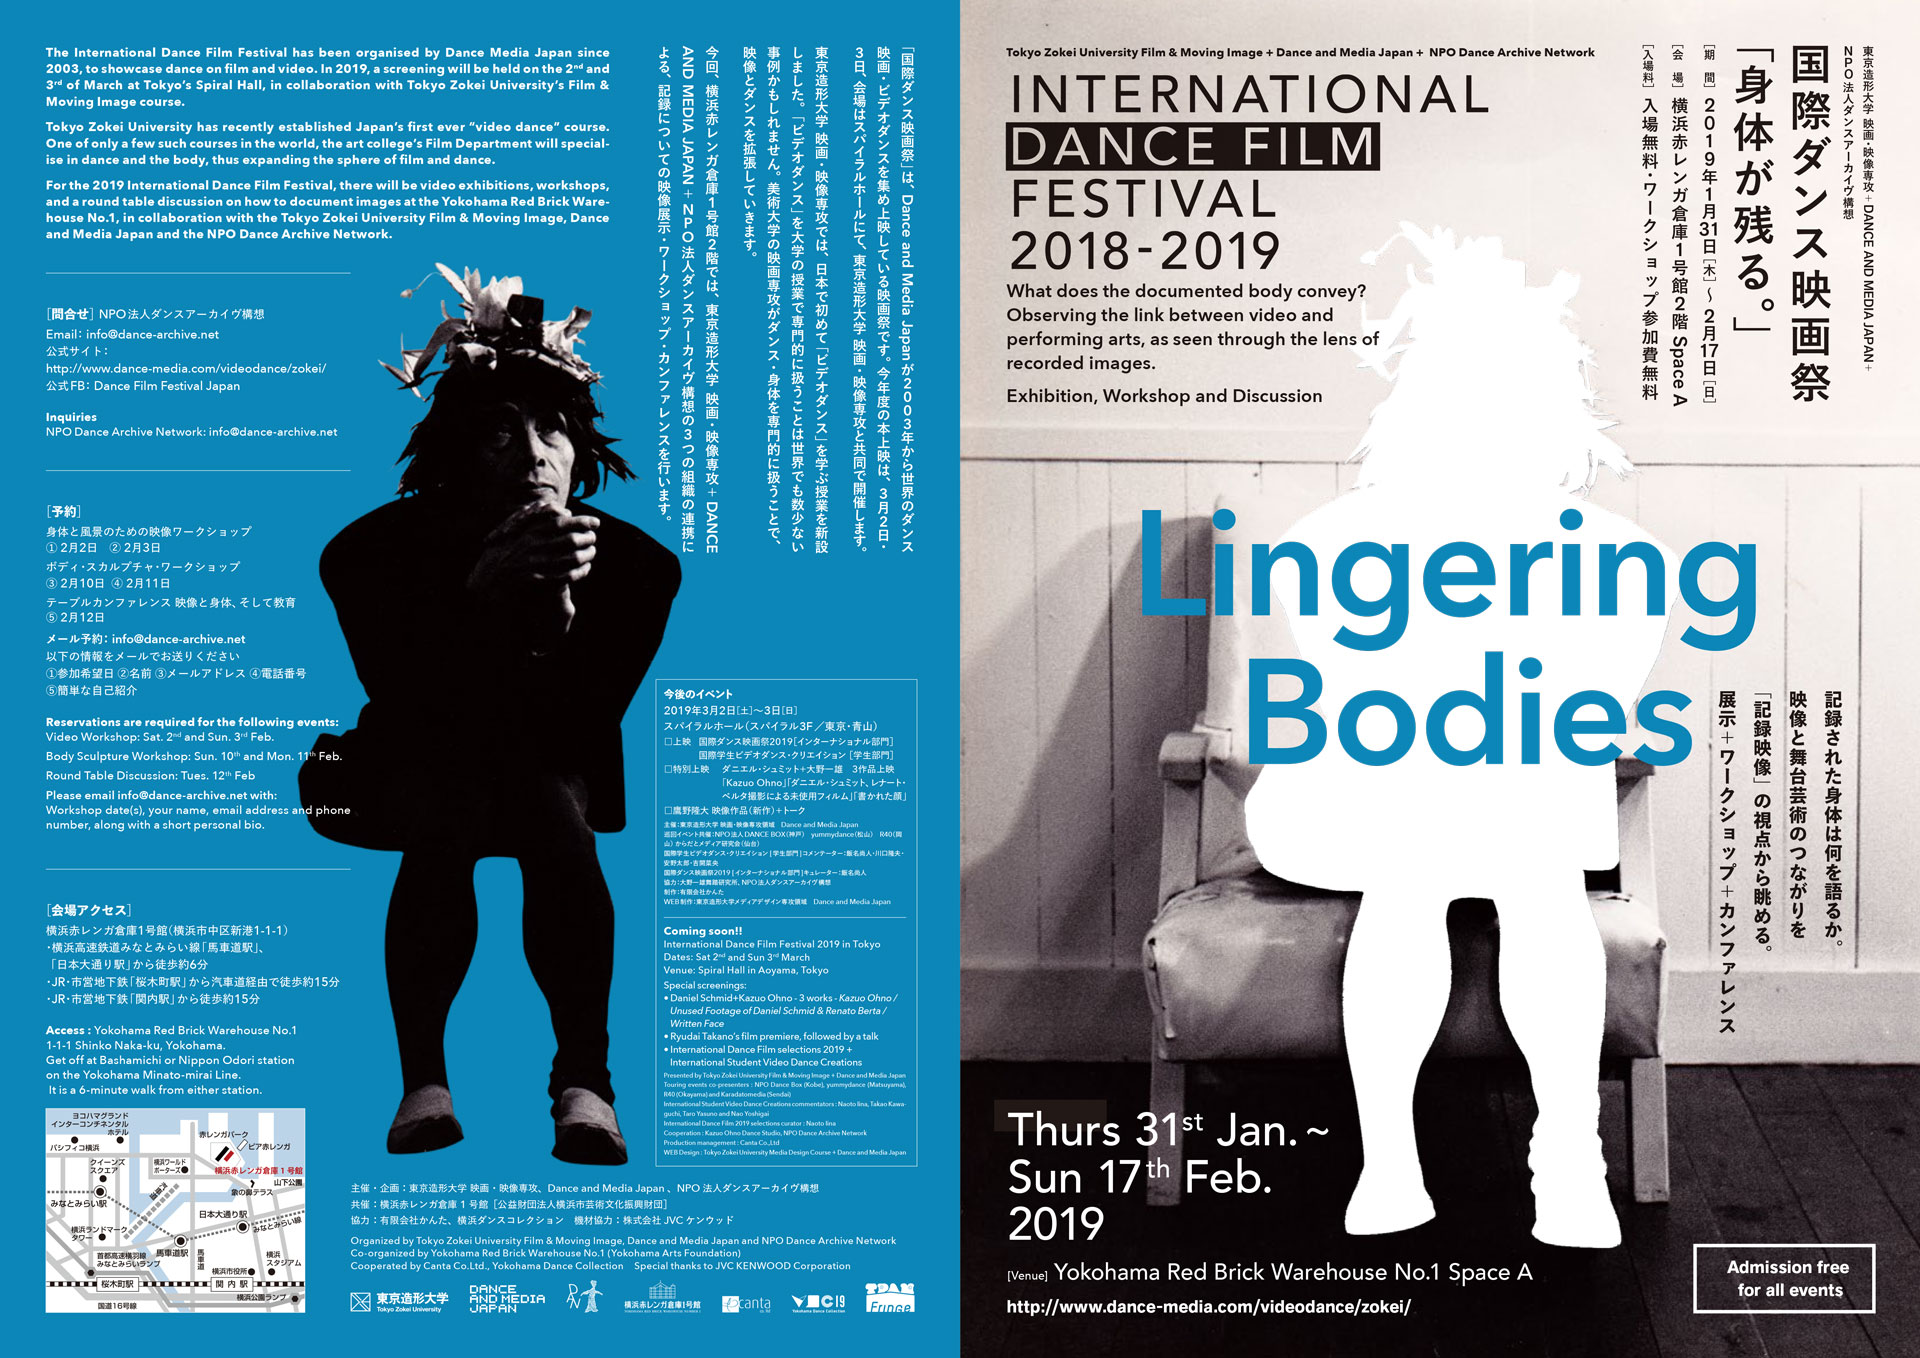 International Dance Film Festival 2018-2019 “Lingering Bodies”